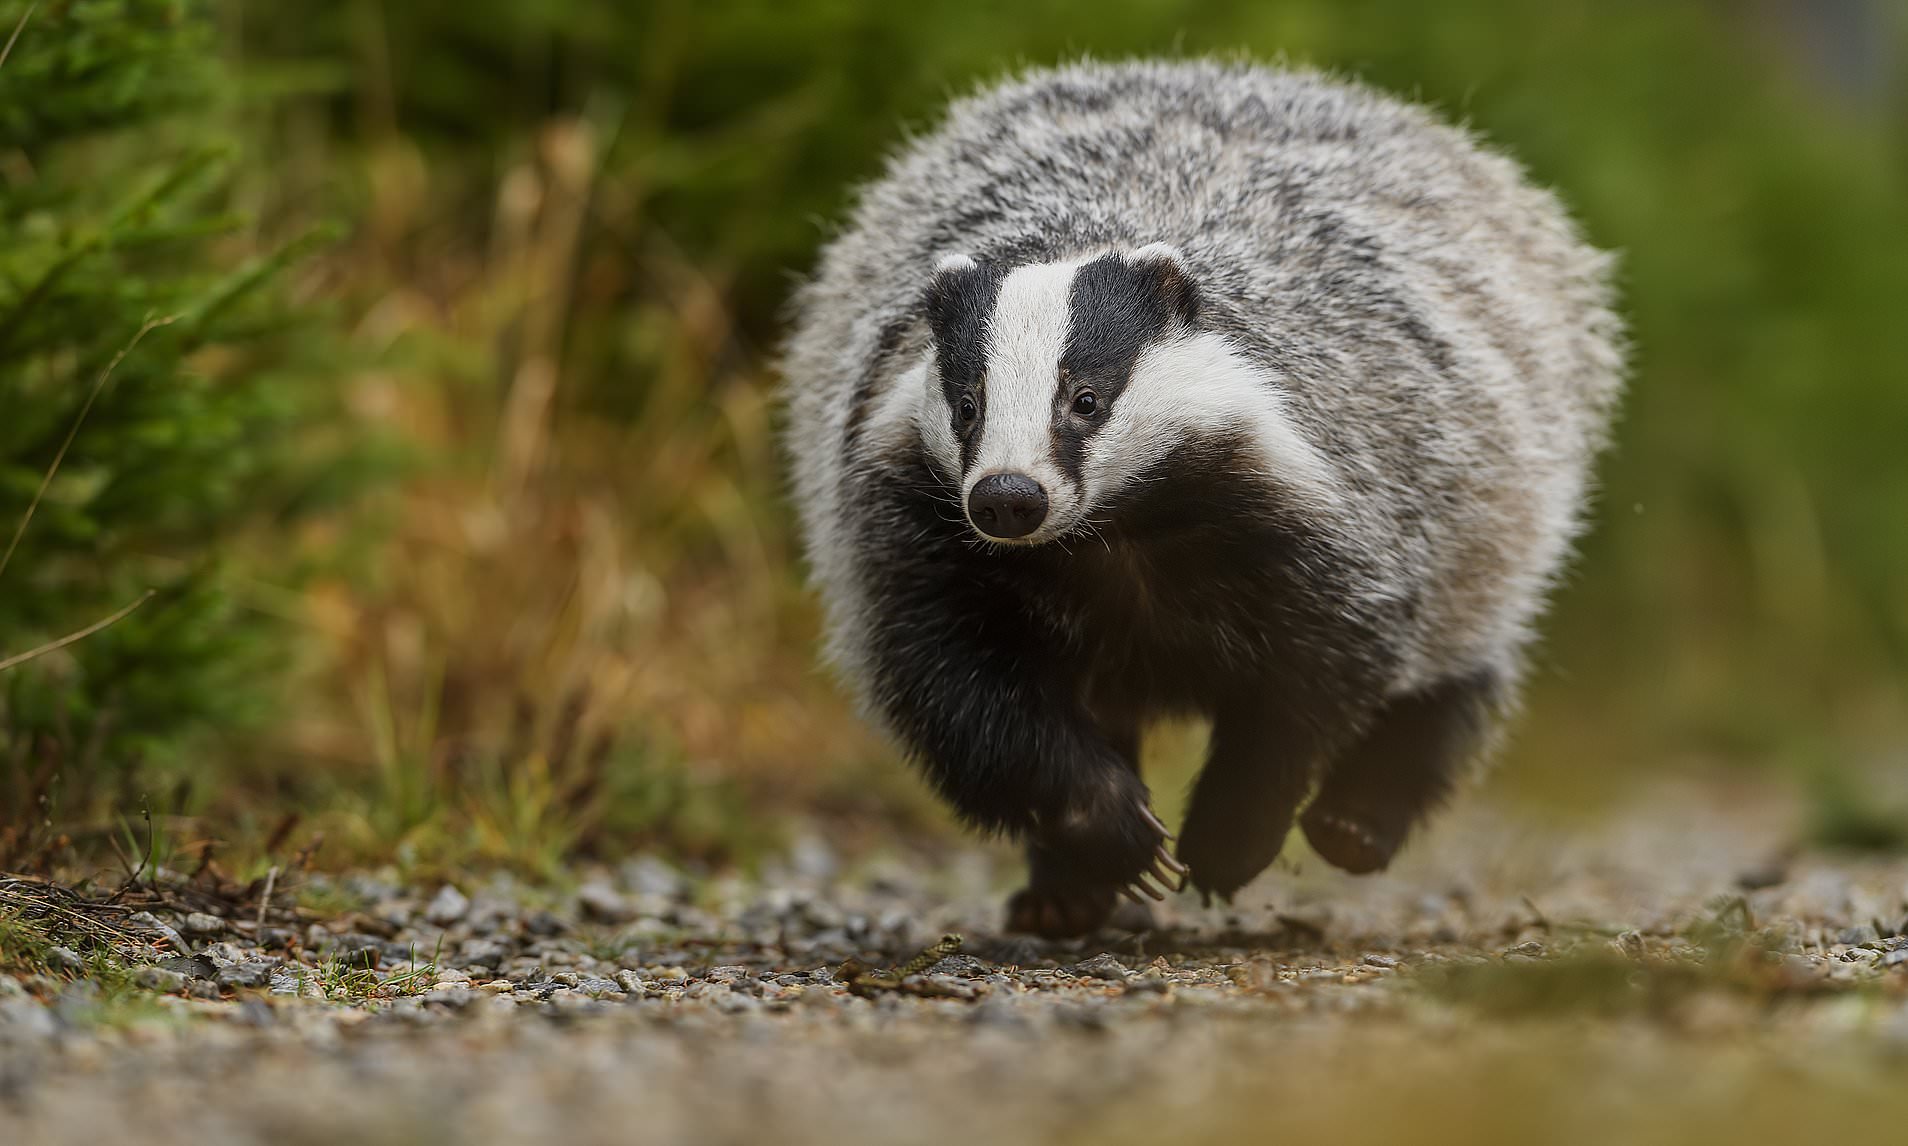 Badger running on gravel path